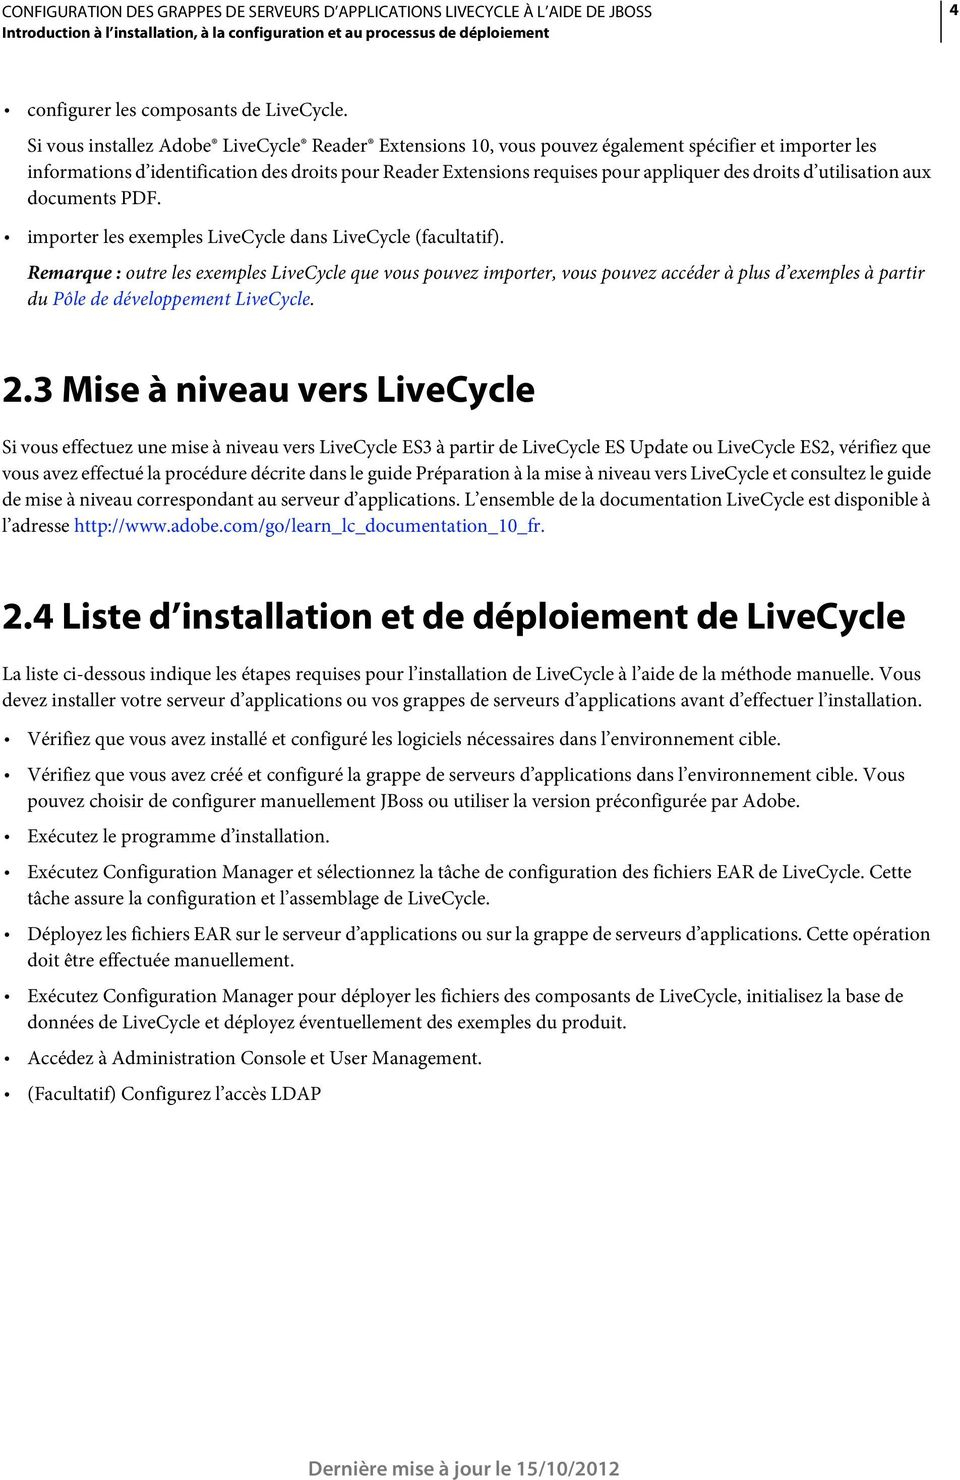 droits d utilisation aux documents PDF. importer les exemples LiveCycle dans LiveCycle (facultatif).